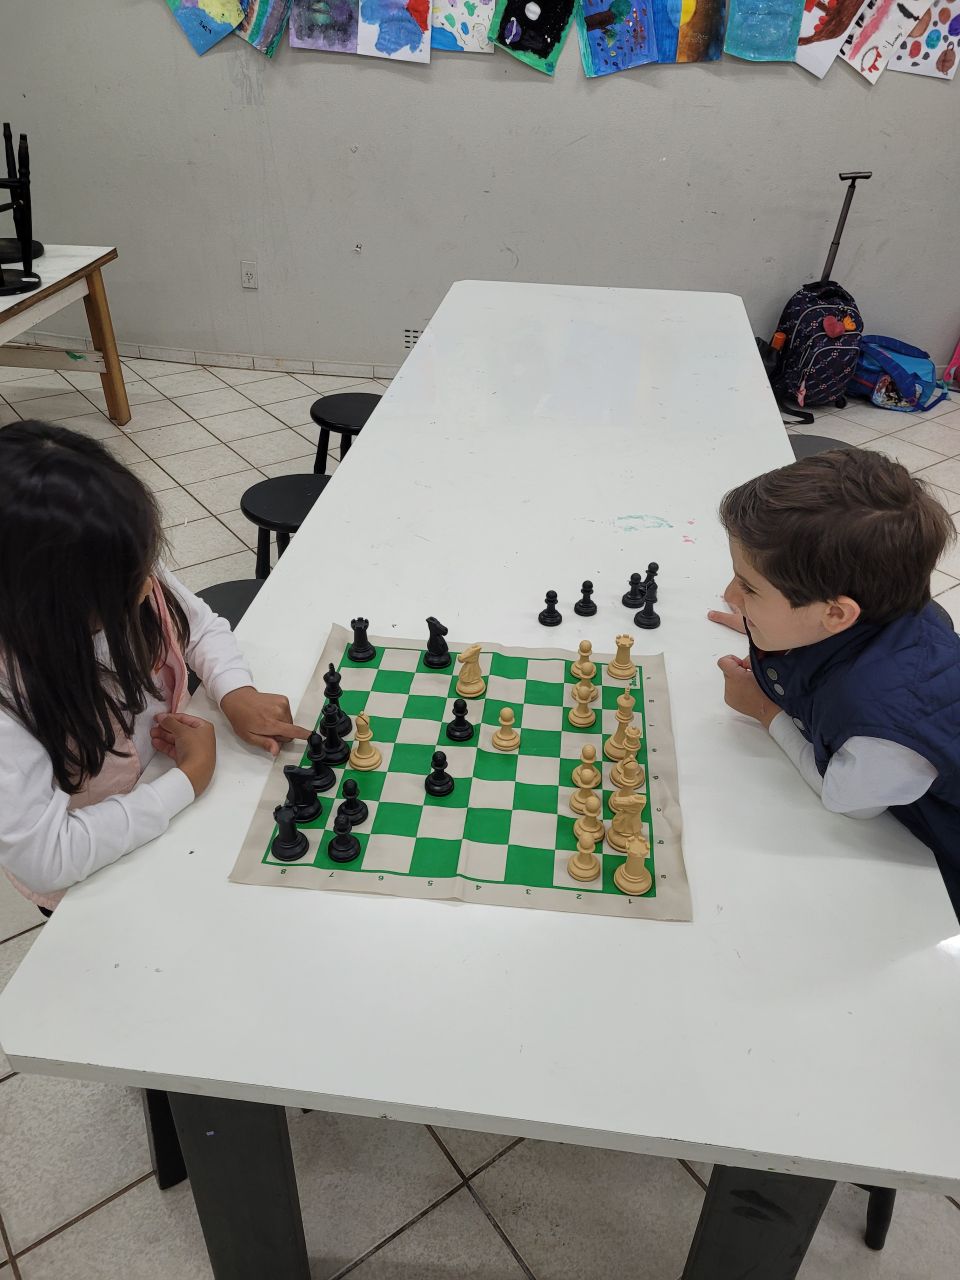 Xadrez incentiva a concentração e a elaboração de estratégias